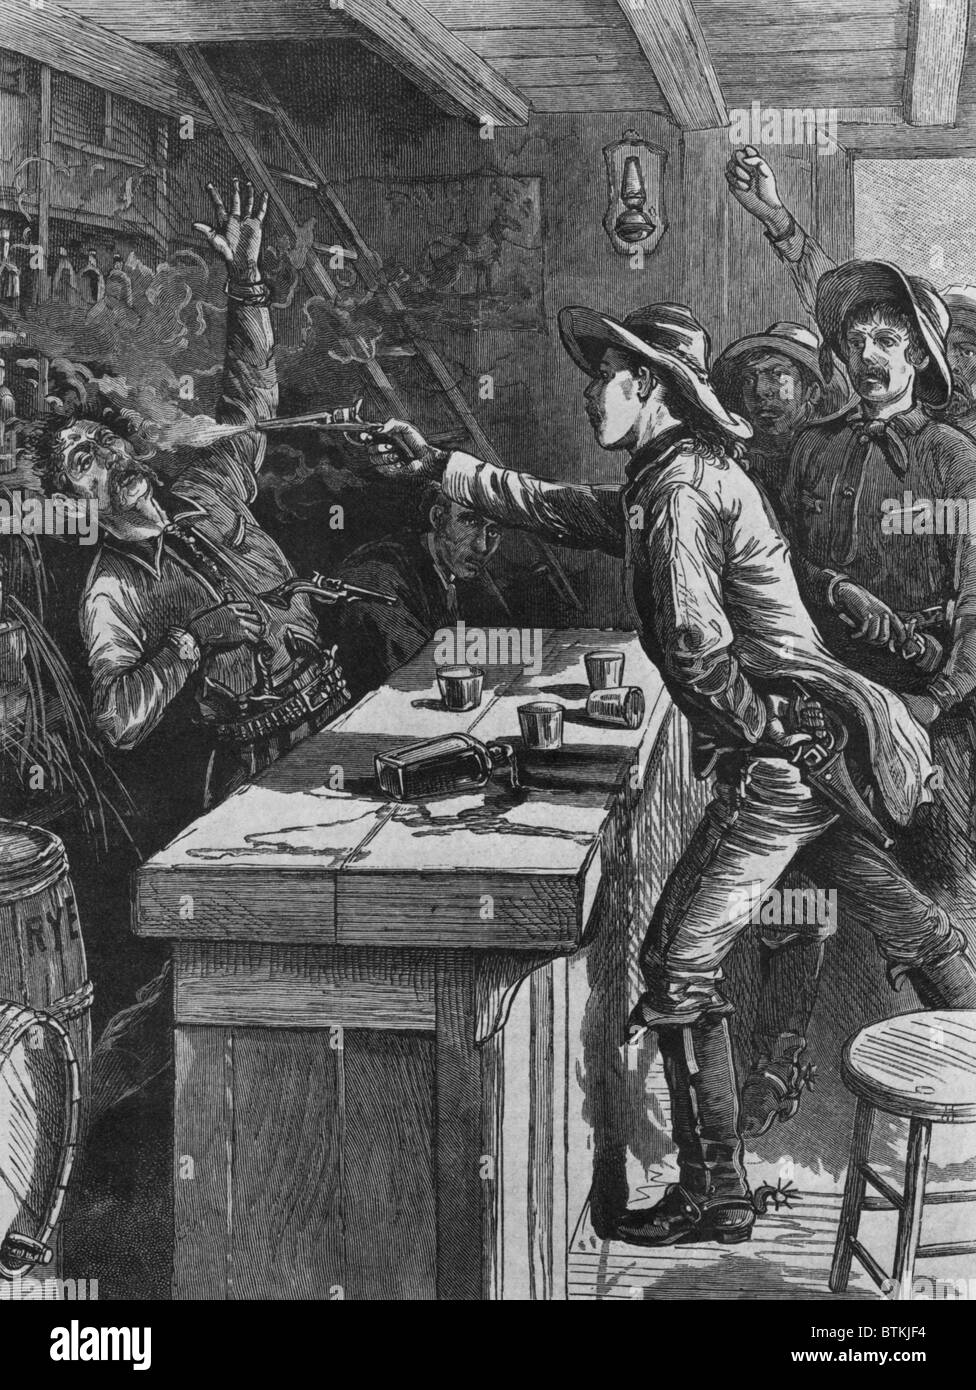 Billy the Kid (1859-81), schießen einen Barkeeper im Jahre 1880. Illustration aus der POLICE GAZETTE. Holzstich. Stockfoto